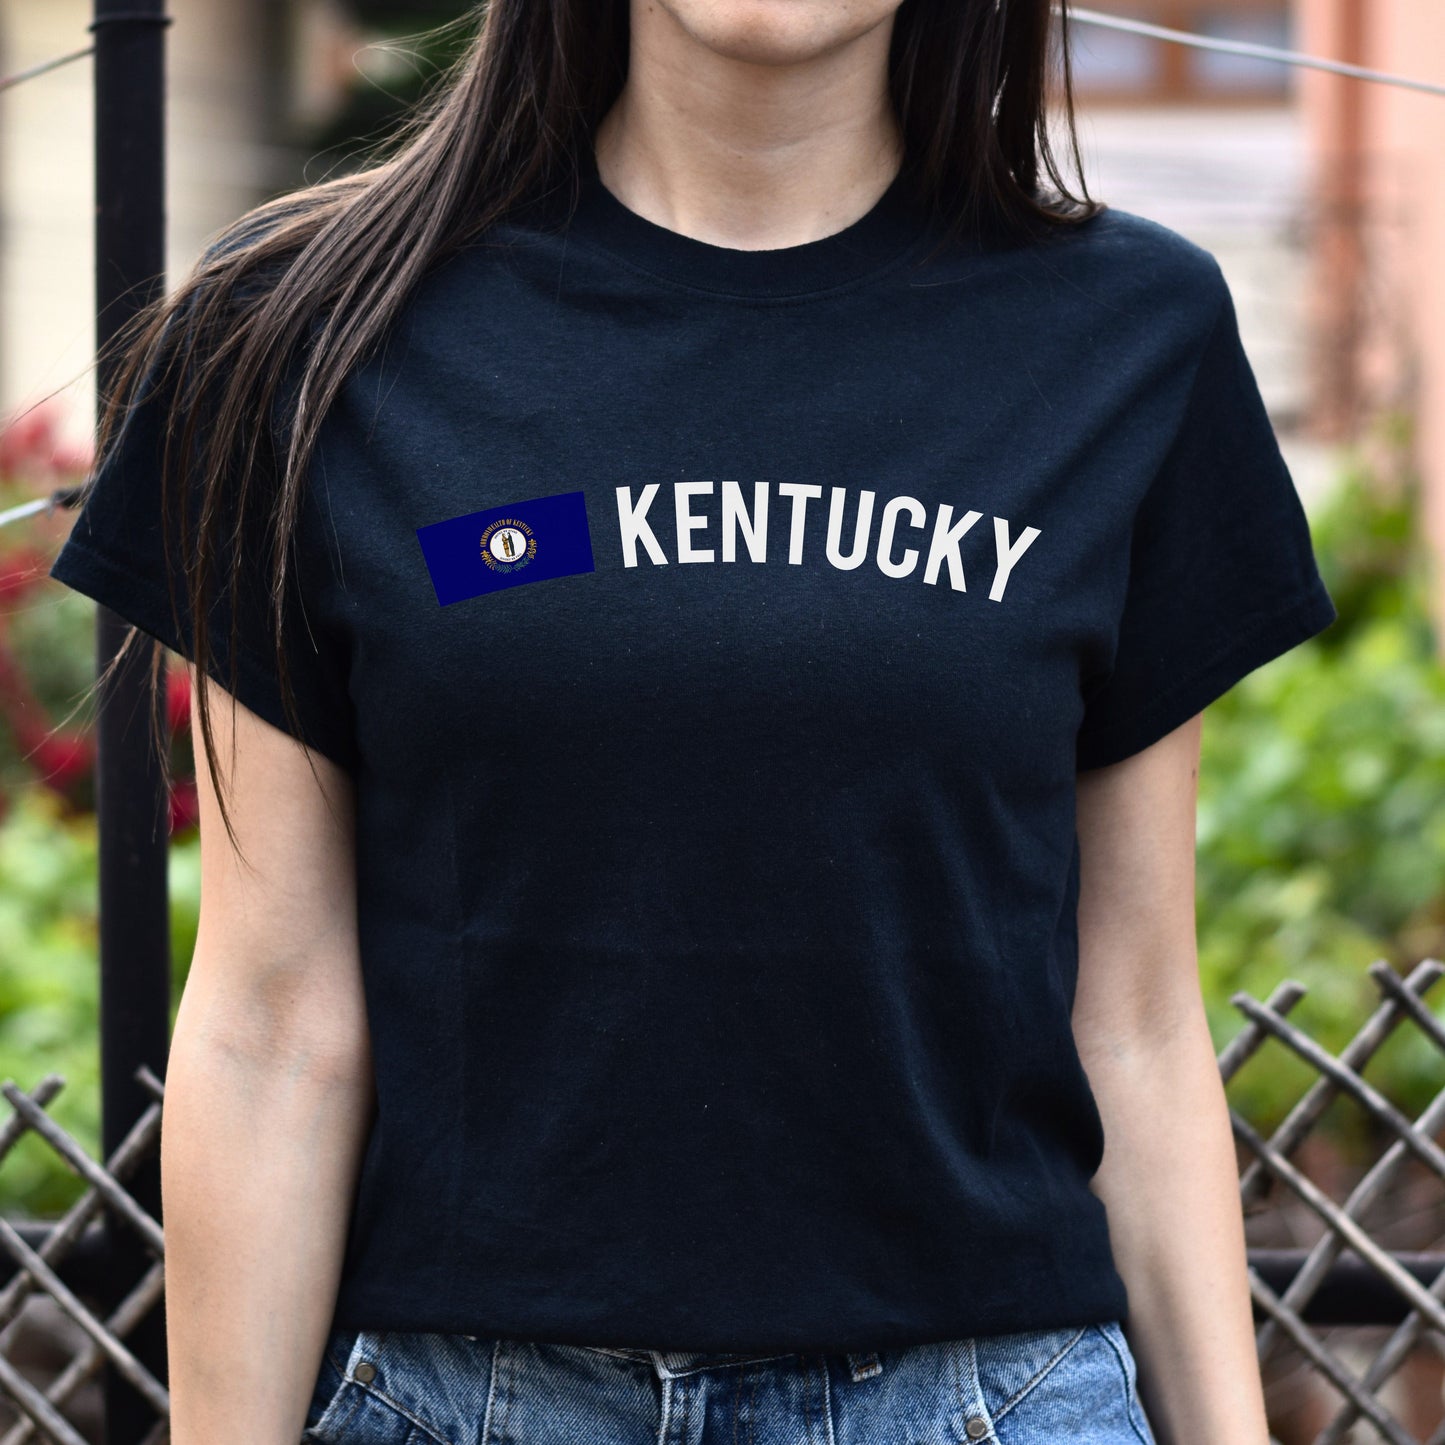 Kentucky Unisex T-shirt gift Kentucky flag tee Louisville Lexington White Black-Black-Family-Gift-Planet